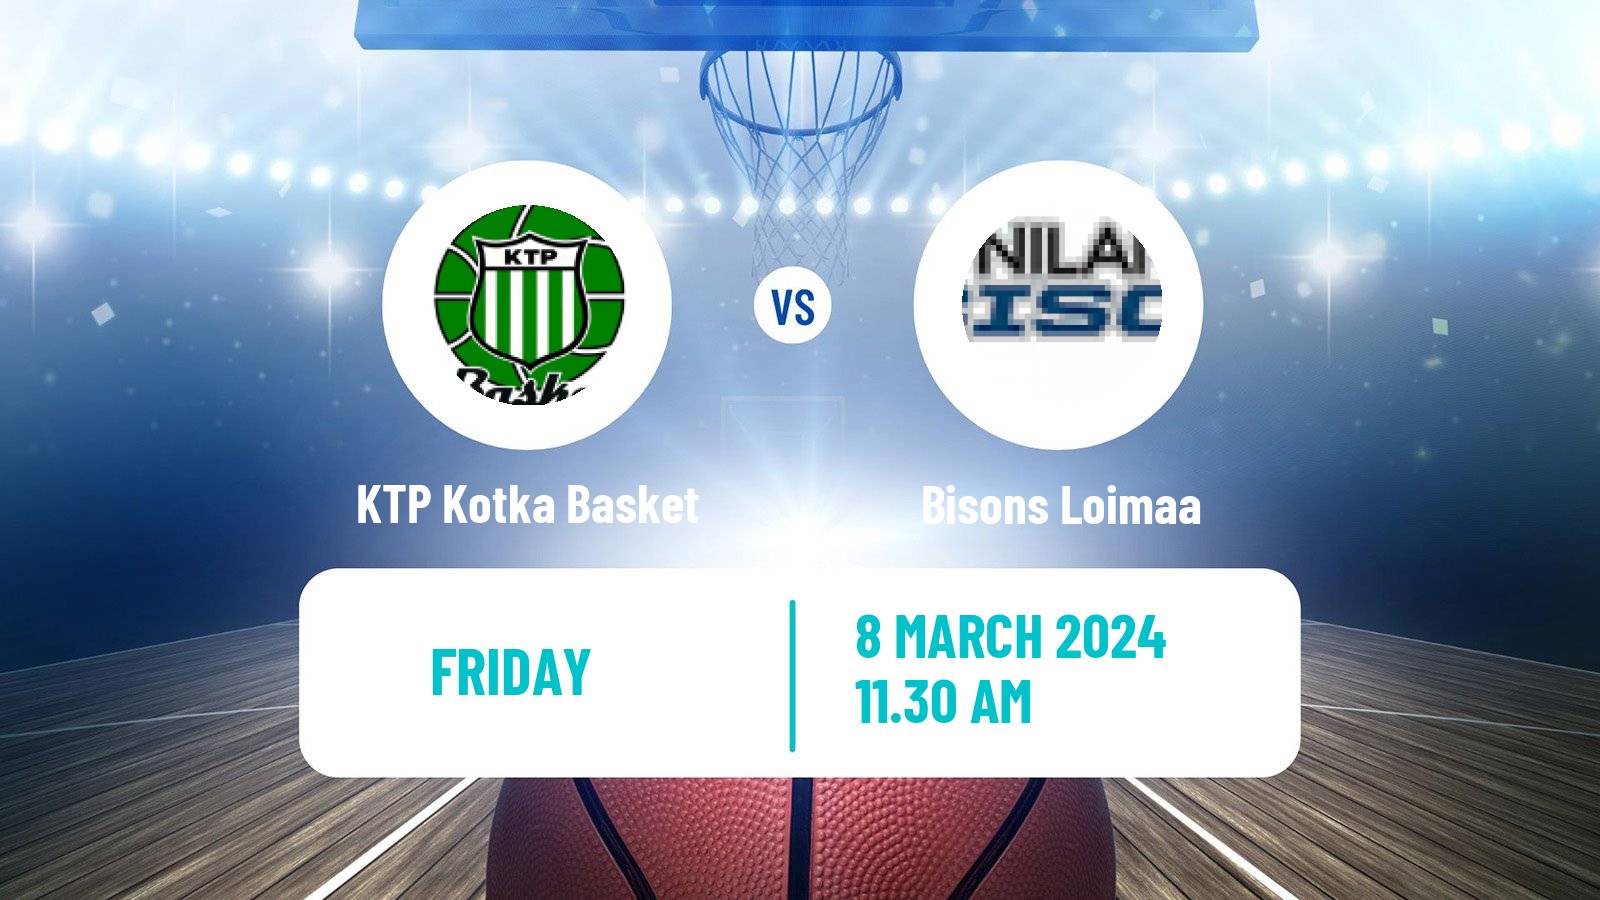 Basketball Finnish Korisliiga KTP Kotka Basket - Bisons Loimaa